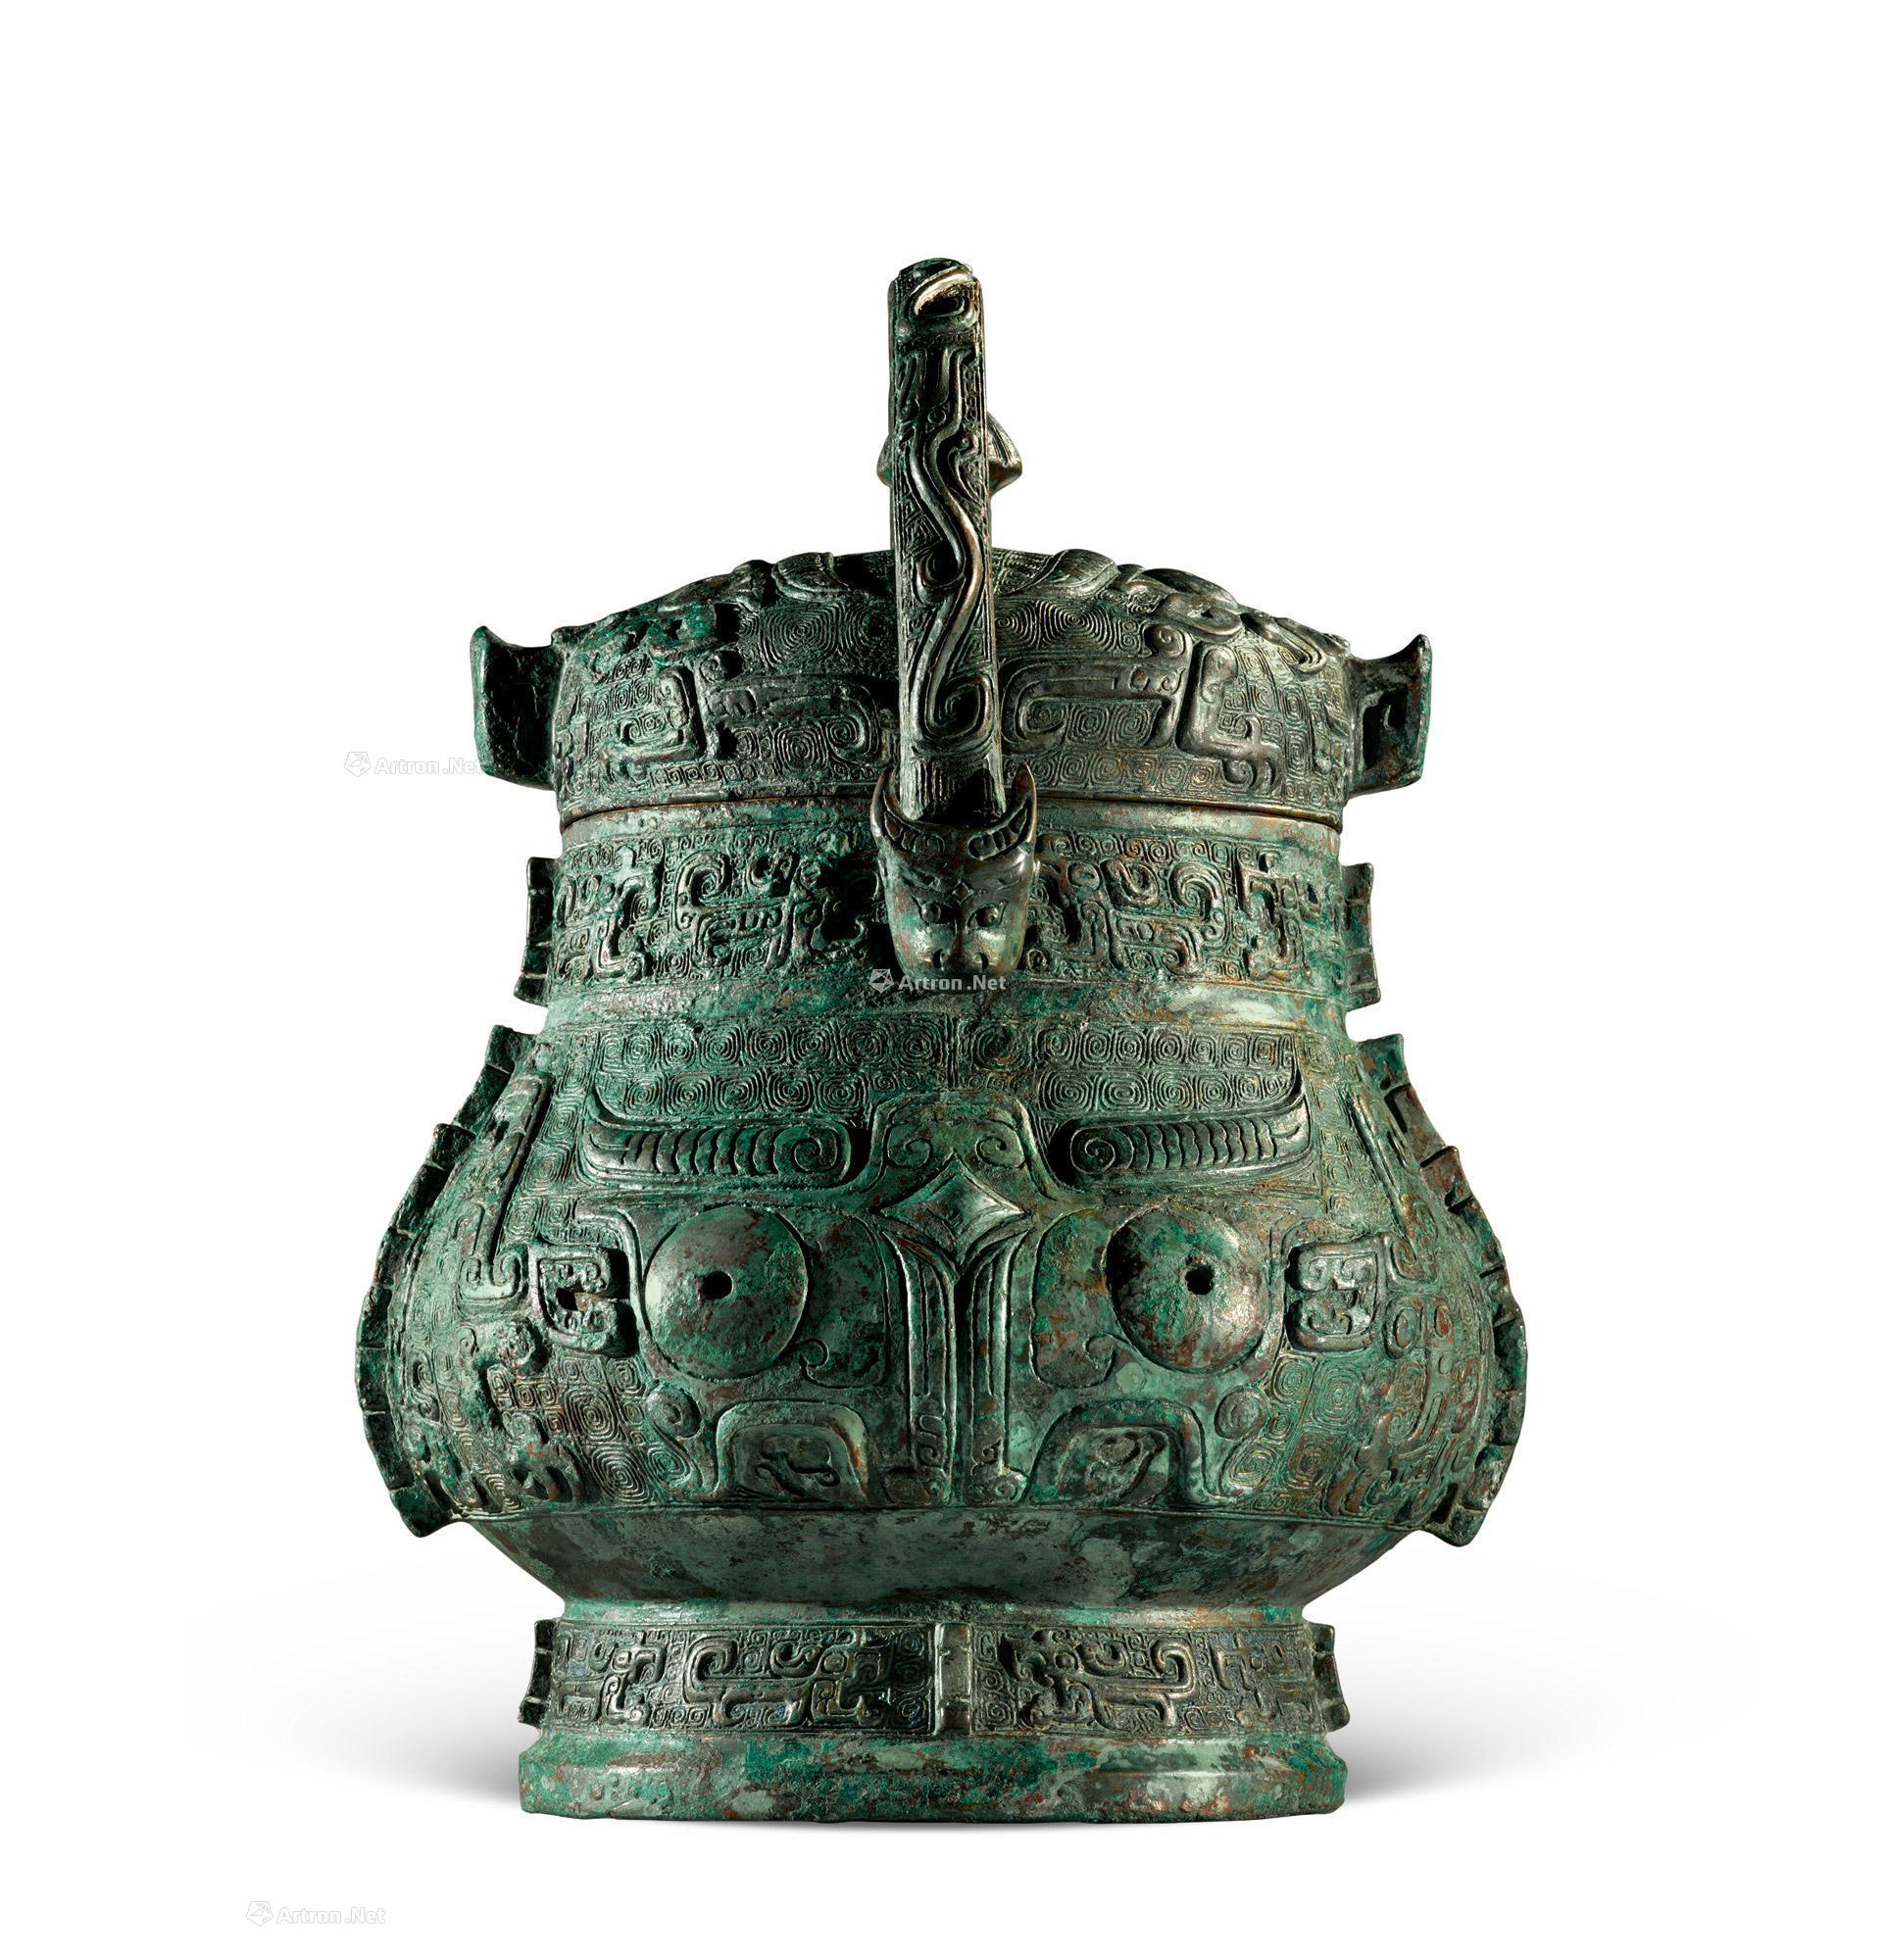 卣拍品分类青铜器创作年代商代晚期尺寸长17cm;宽22cm;高30cm估价